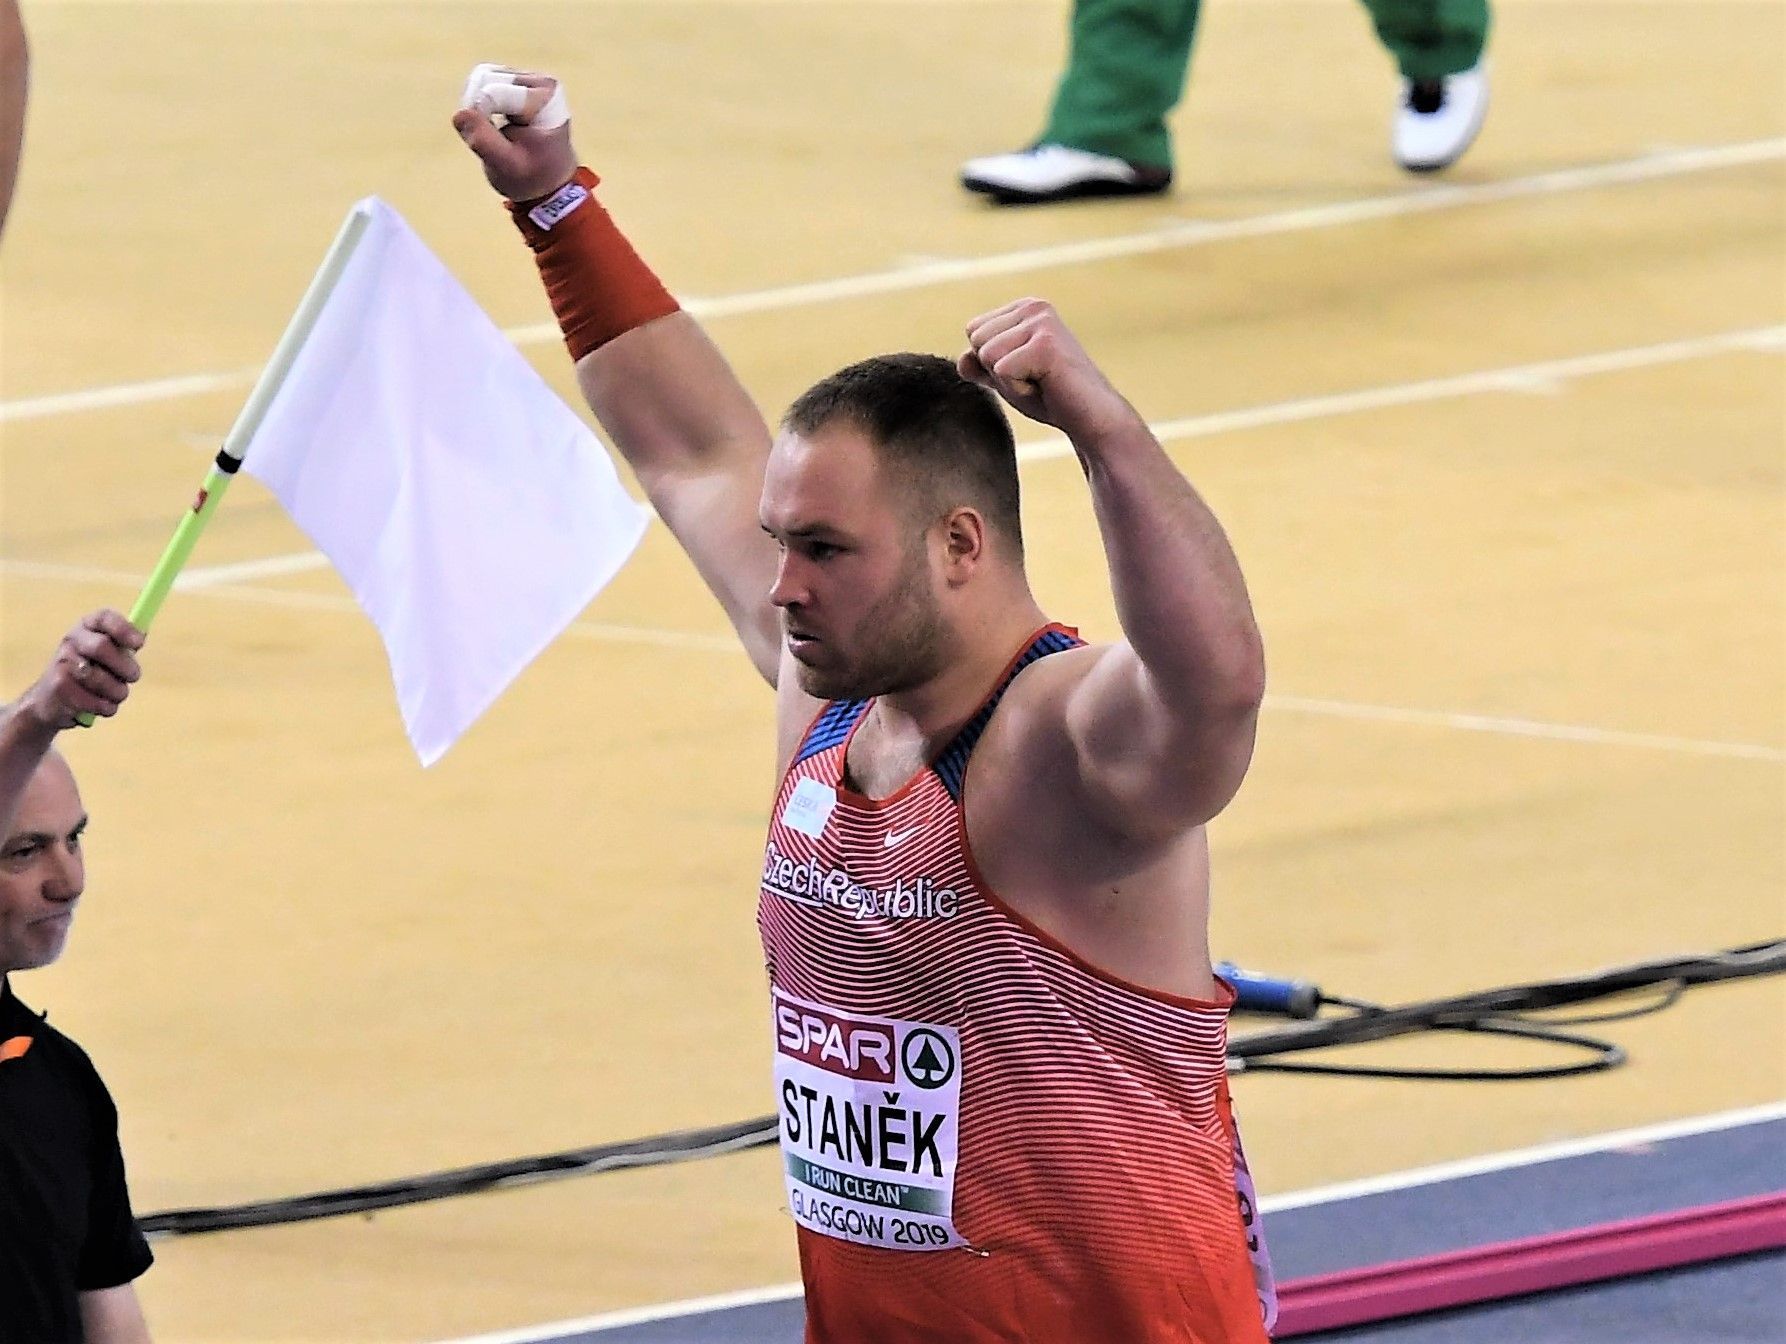 atletika, HME 2019, koulař Tomáš Staněk v kvalifikaci